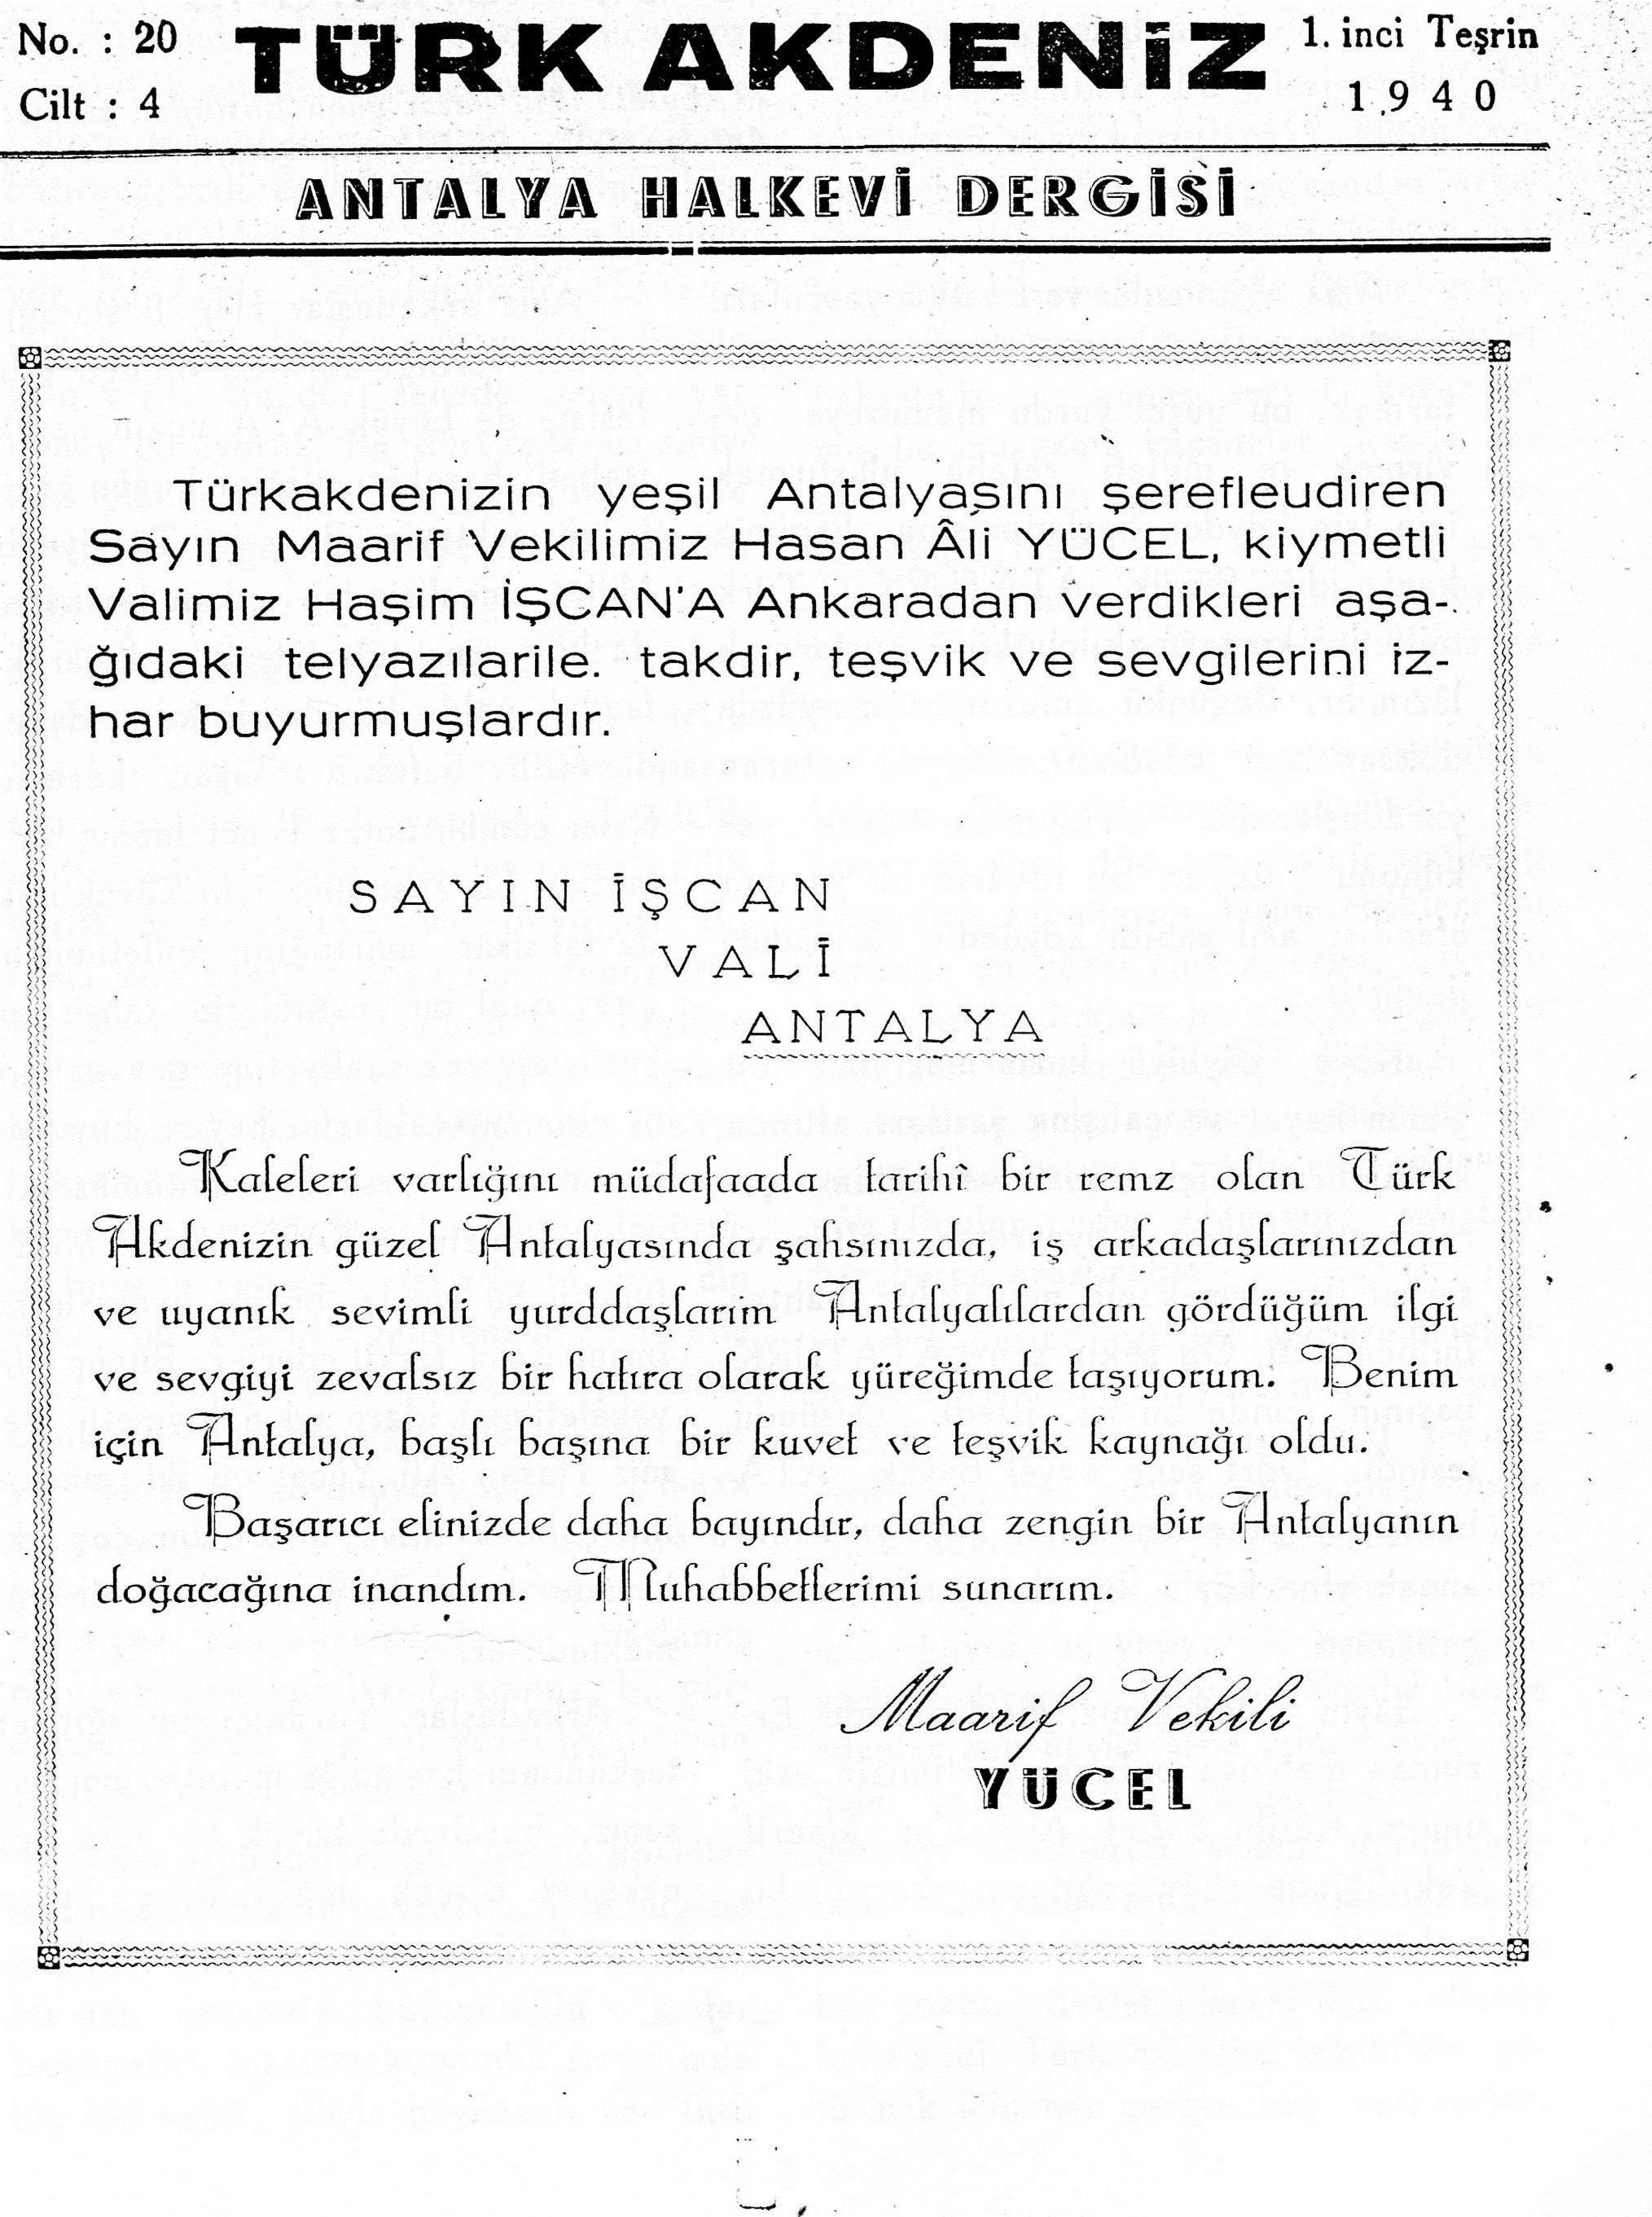 he-turk-akdeniz_1940-4(20)